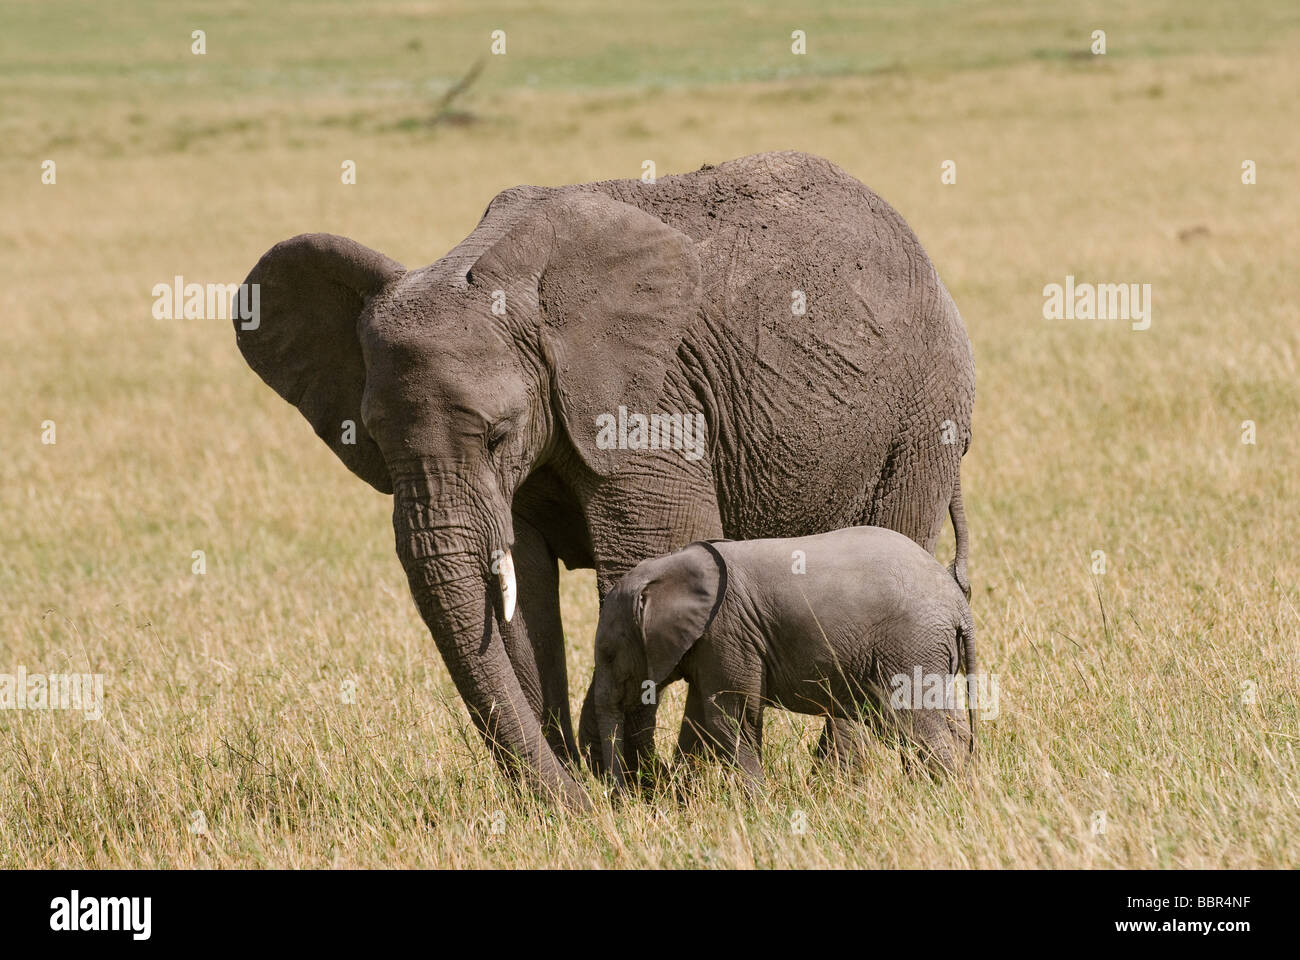 Bush africain Elephant Loxodonta africana mère animale avec les jeunes de la réserve nationale de Masai Mara au Kenya Afrique de l'Est Banque D'Images